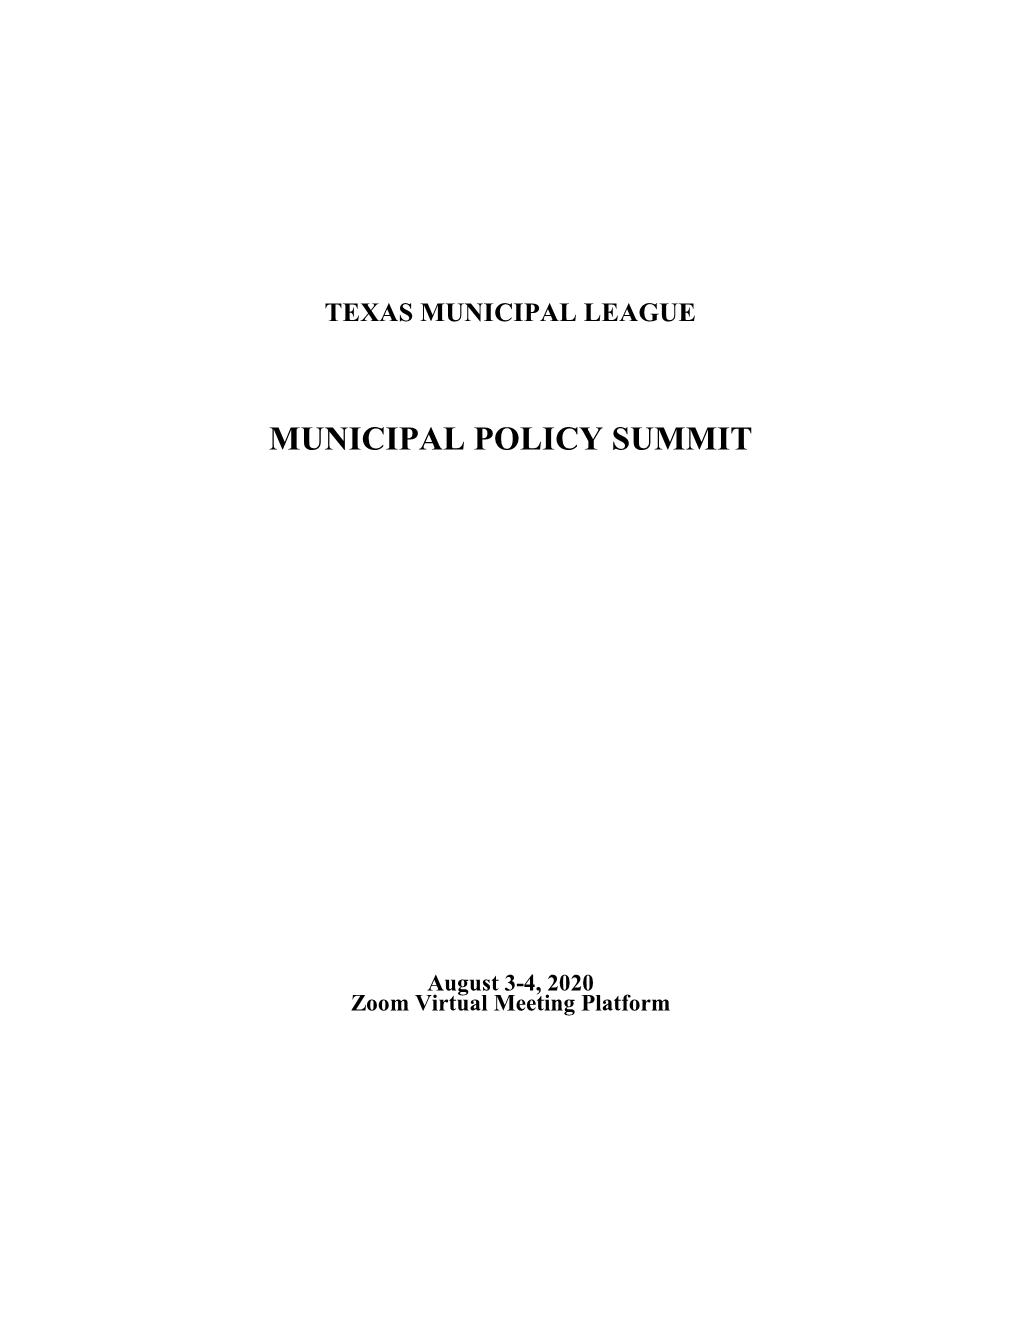 Municipal Policy Summit